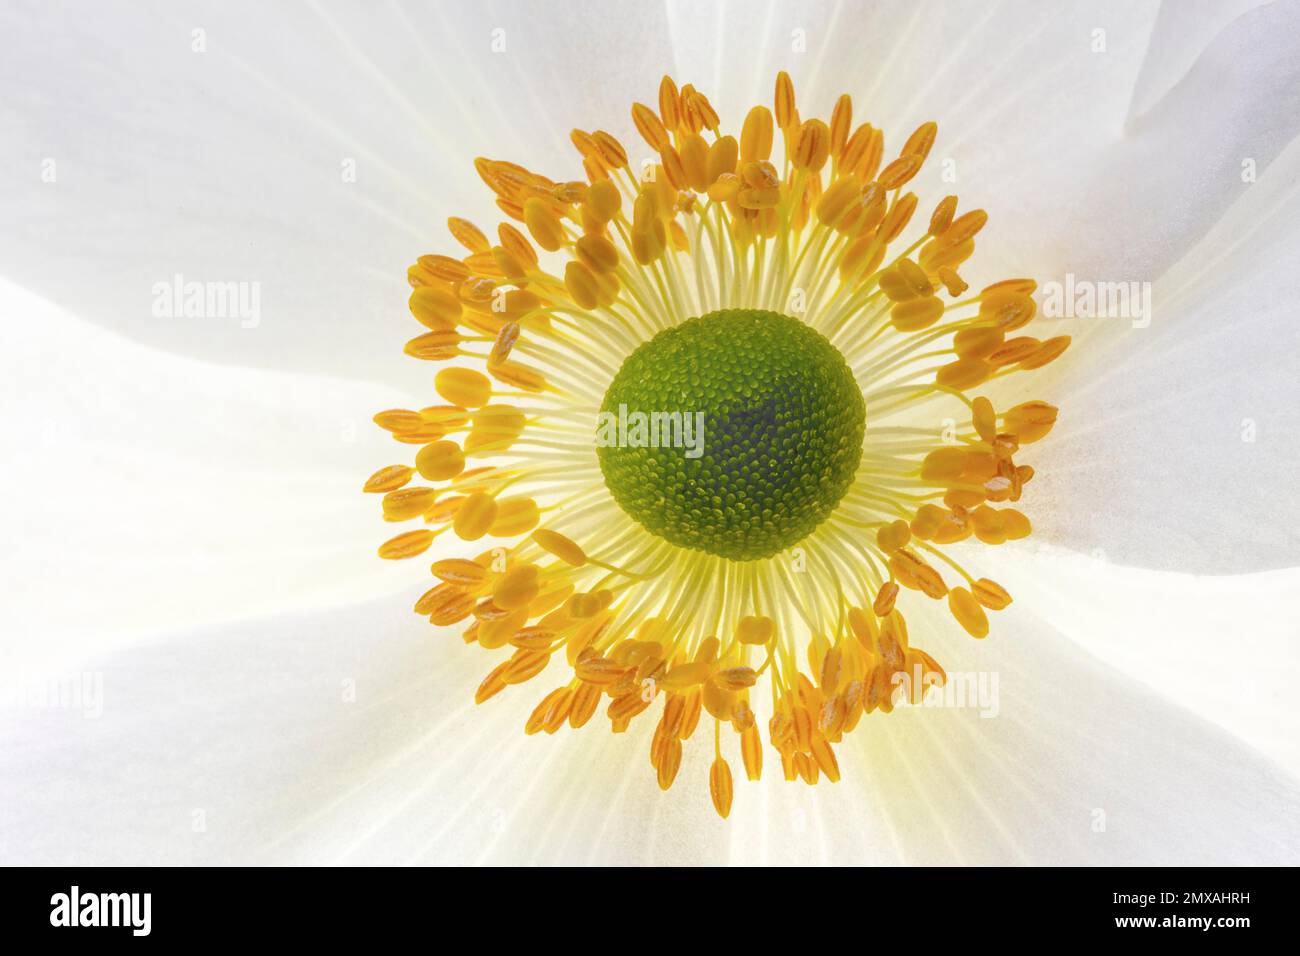 White chinese anemones (Anemone hupehensis), flower, macro photo, Germany Stock Photo